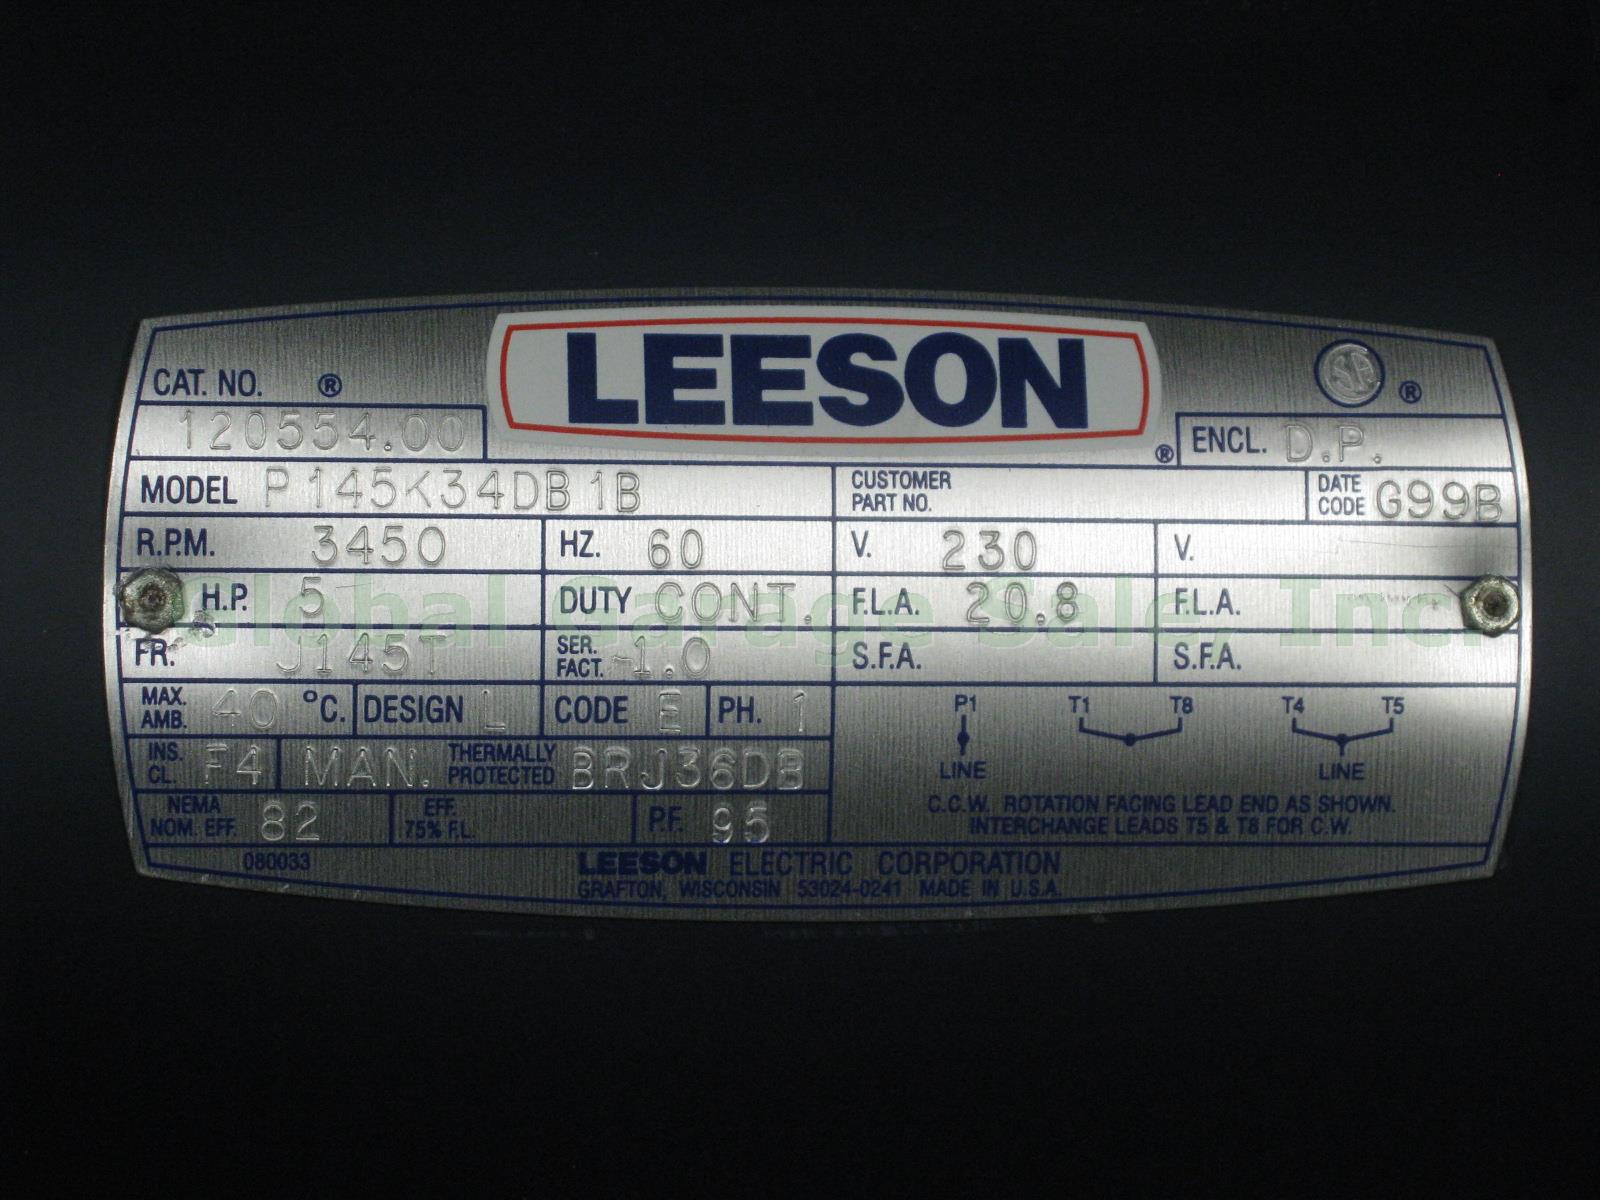 New Leeson P145K34DB1B 5HP 3450RPM 1 Phase 230V 60Hz 7/8" Shaft 20.8a Motor NR!! 1